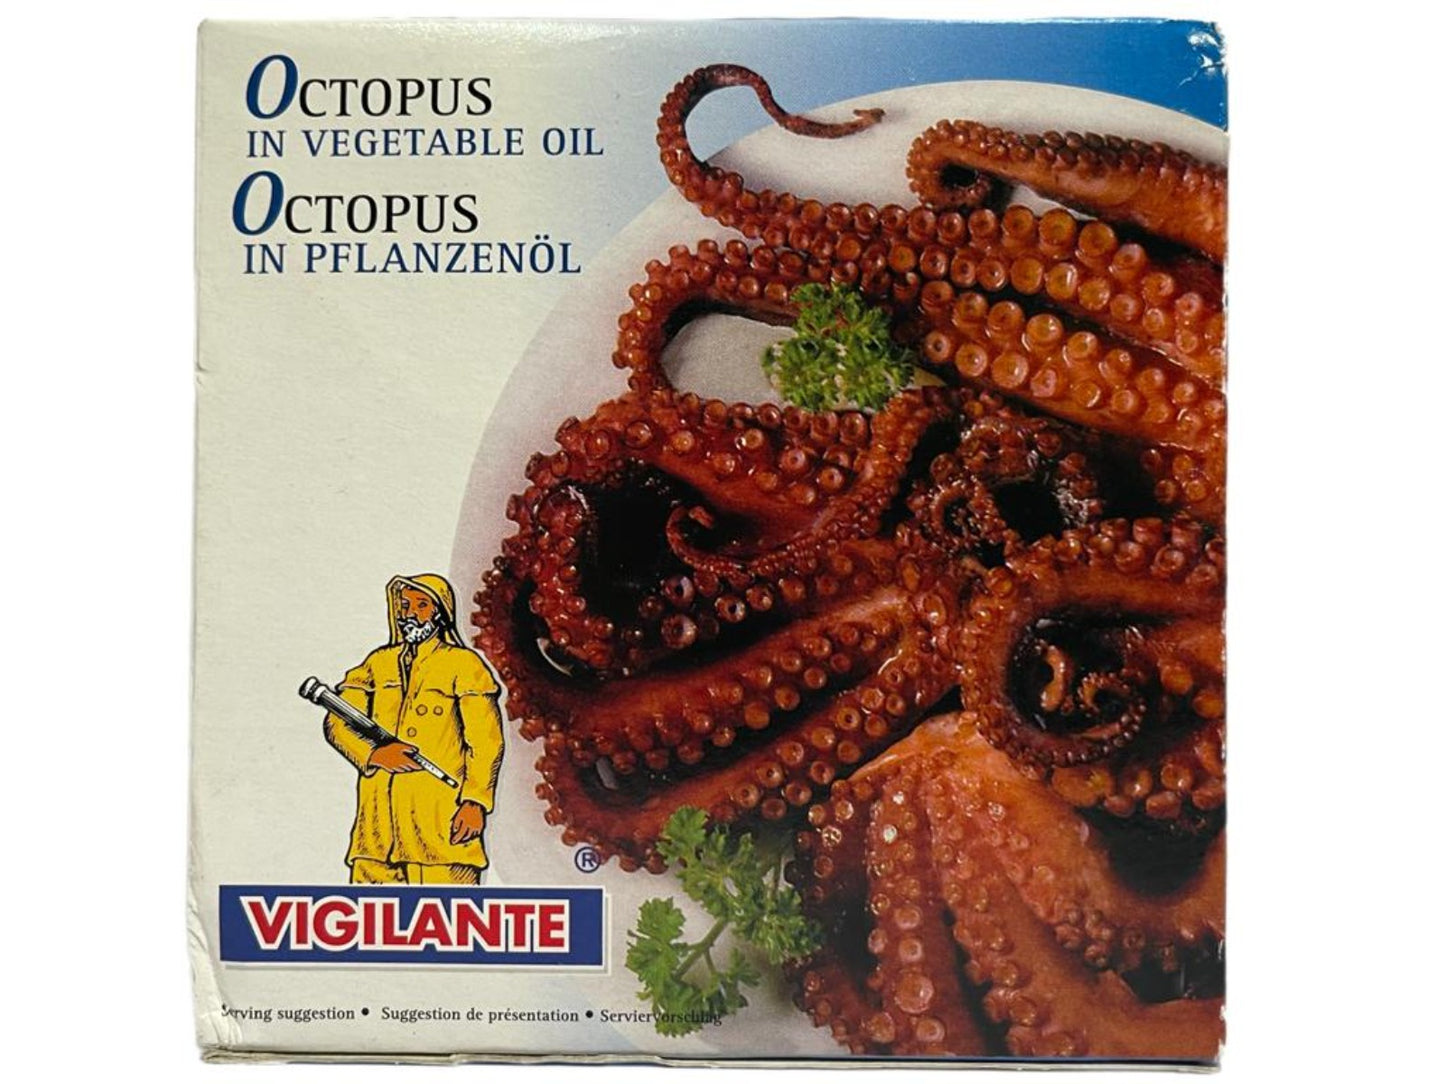 Vigilante Pulpo en Aceite Vegetal Octopus in Vegetable Oil 270g